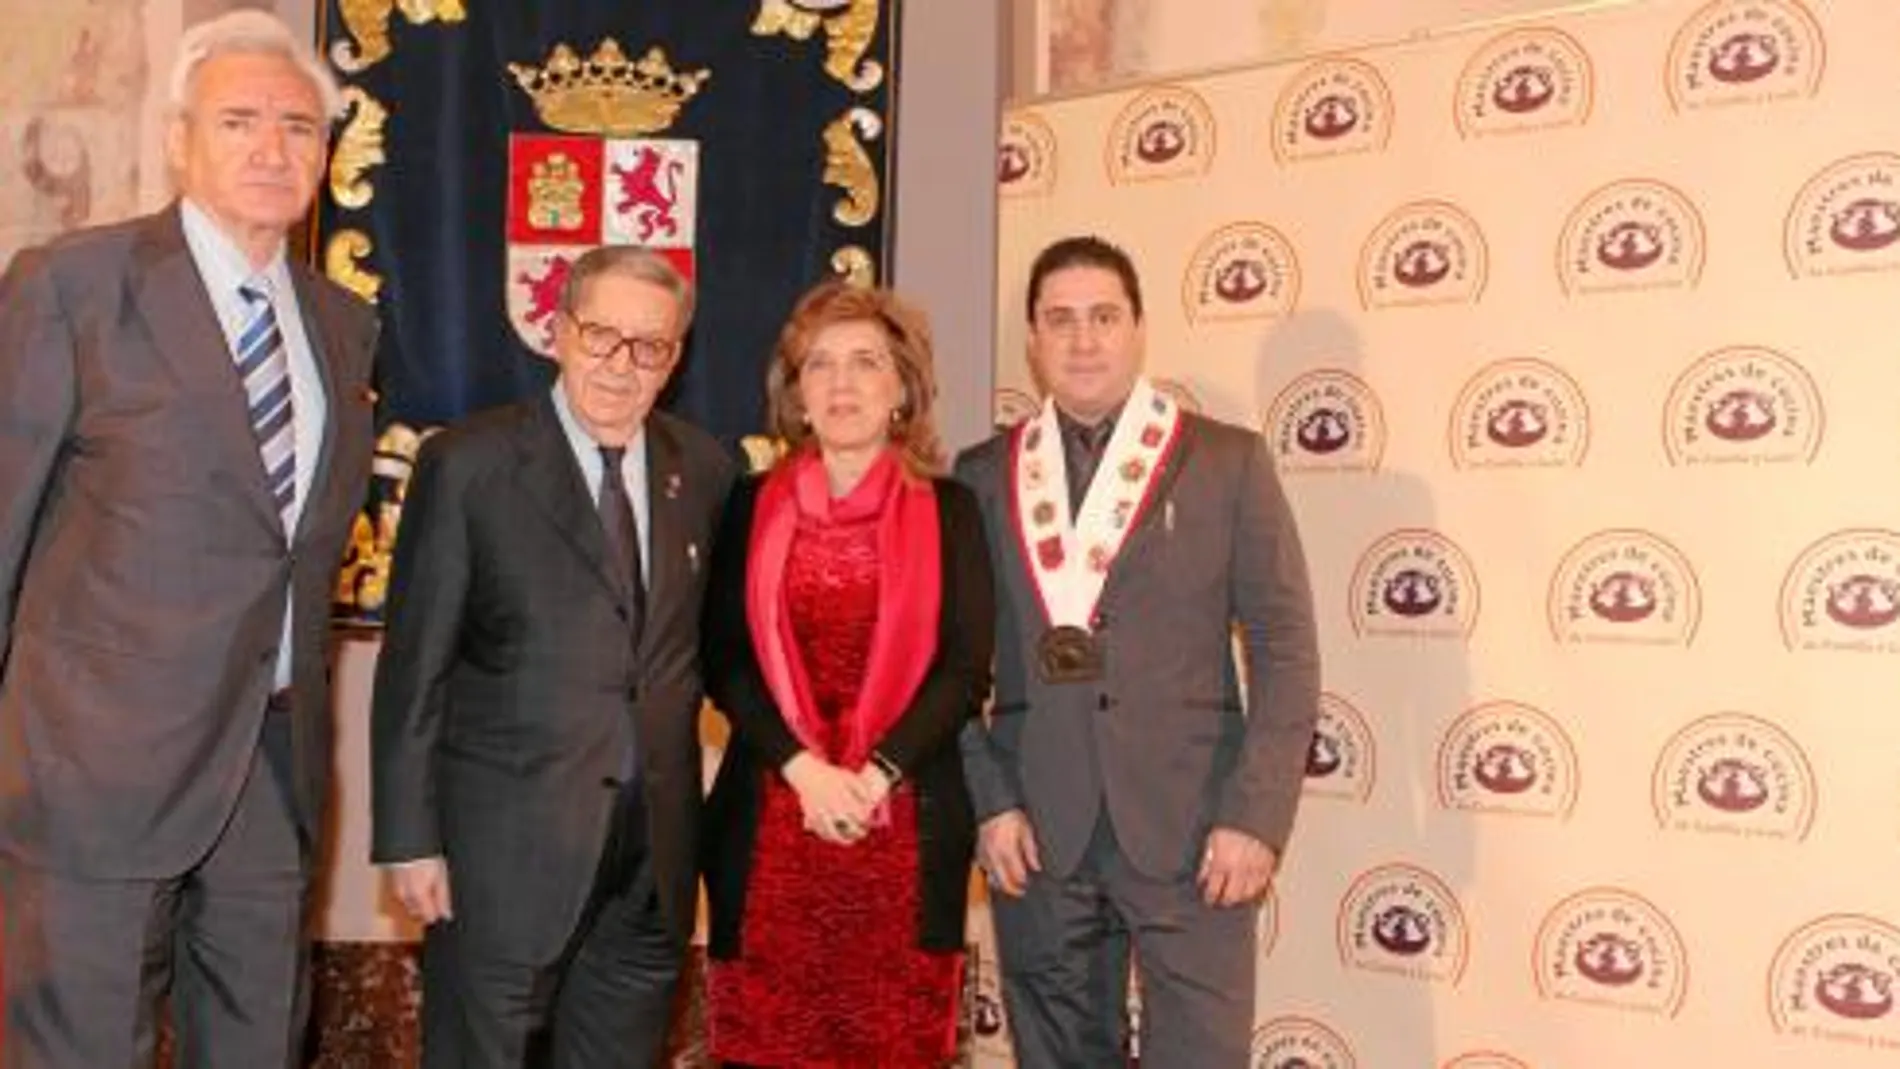 La consejera María José Salgueiro, el presidente de Maestres, César Boal, y los premiados Luis del Olmo y Alberto Cándido López